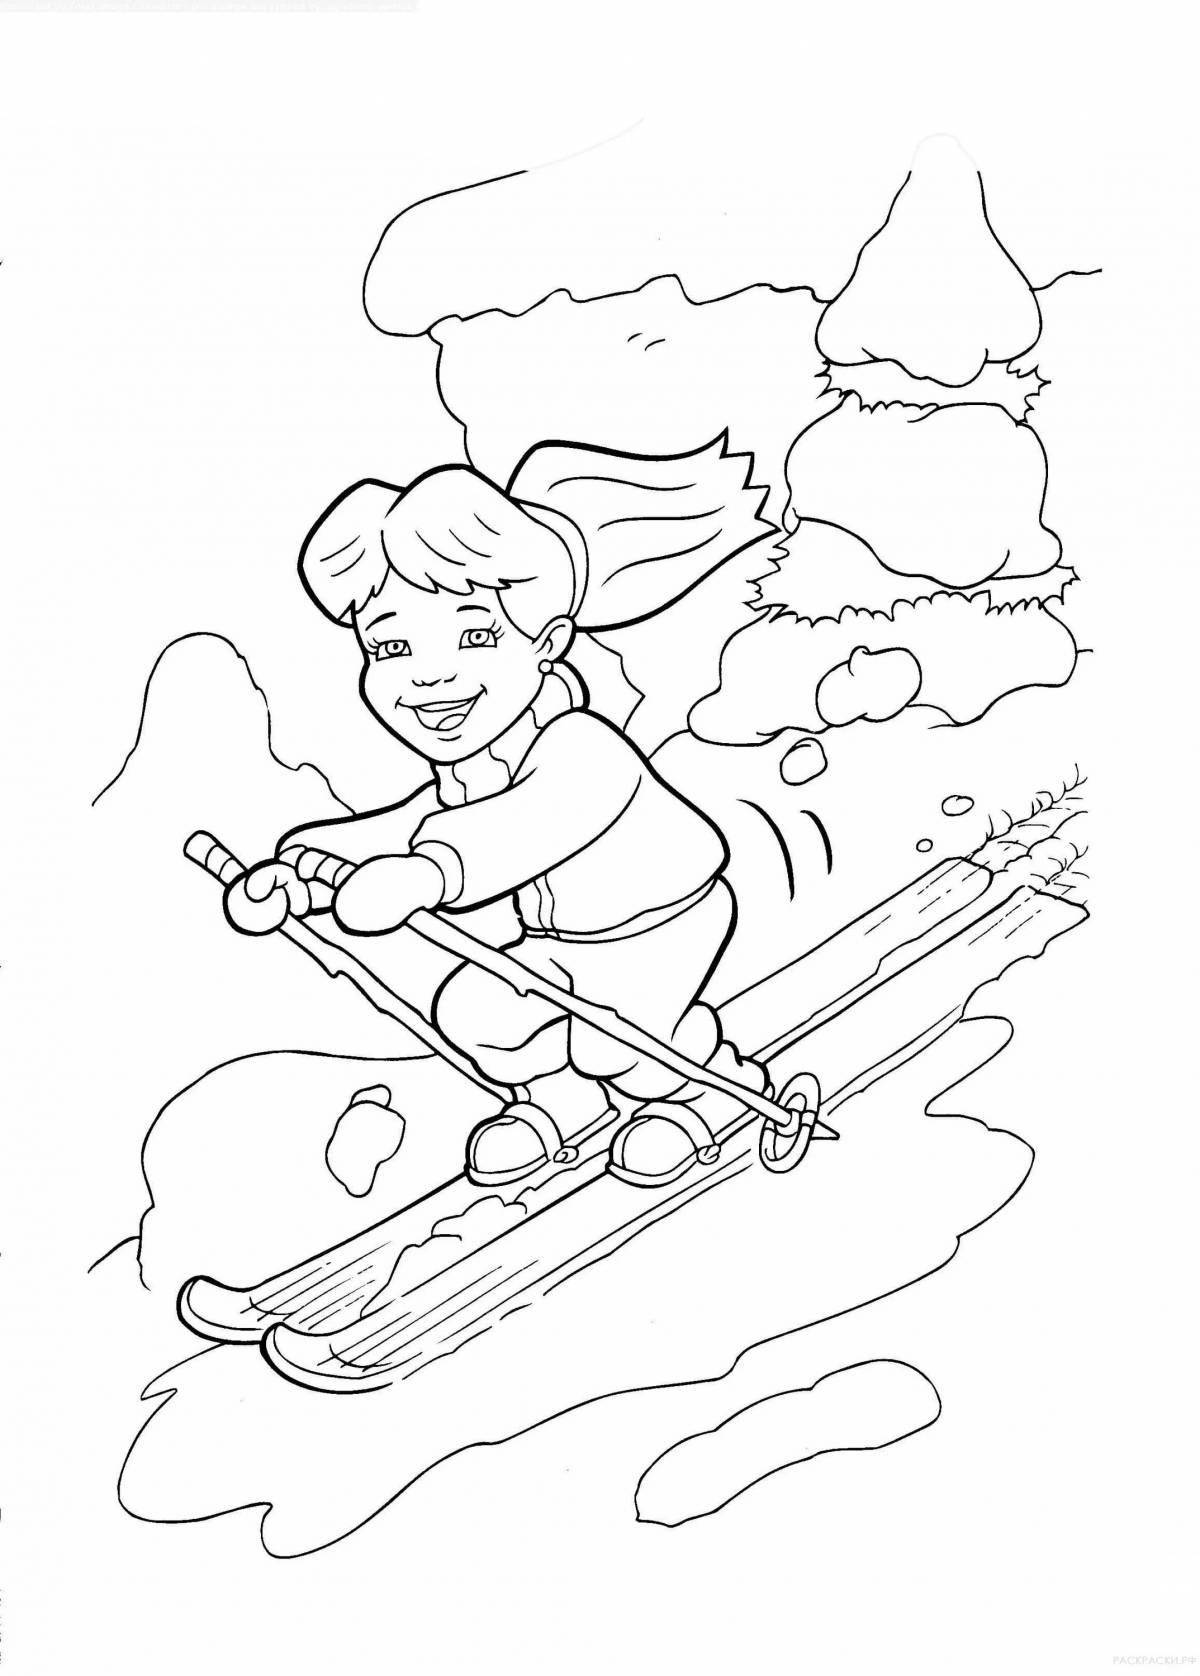 Coloring page energetic skier kid